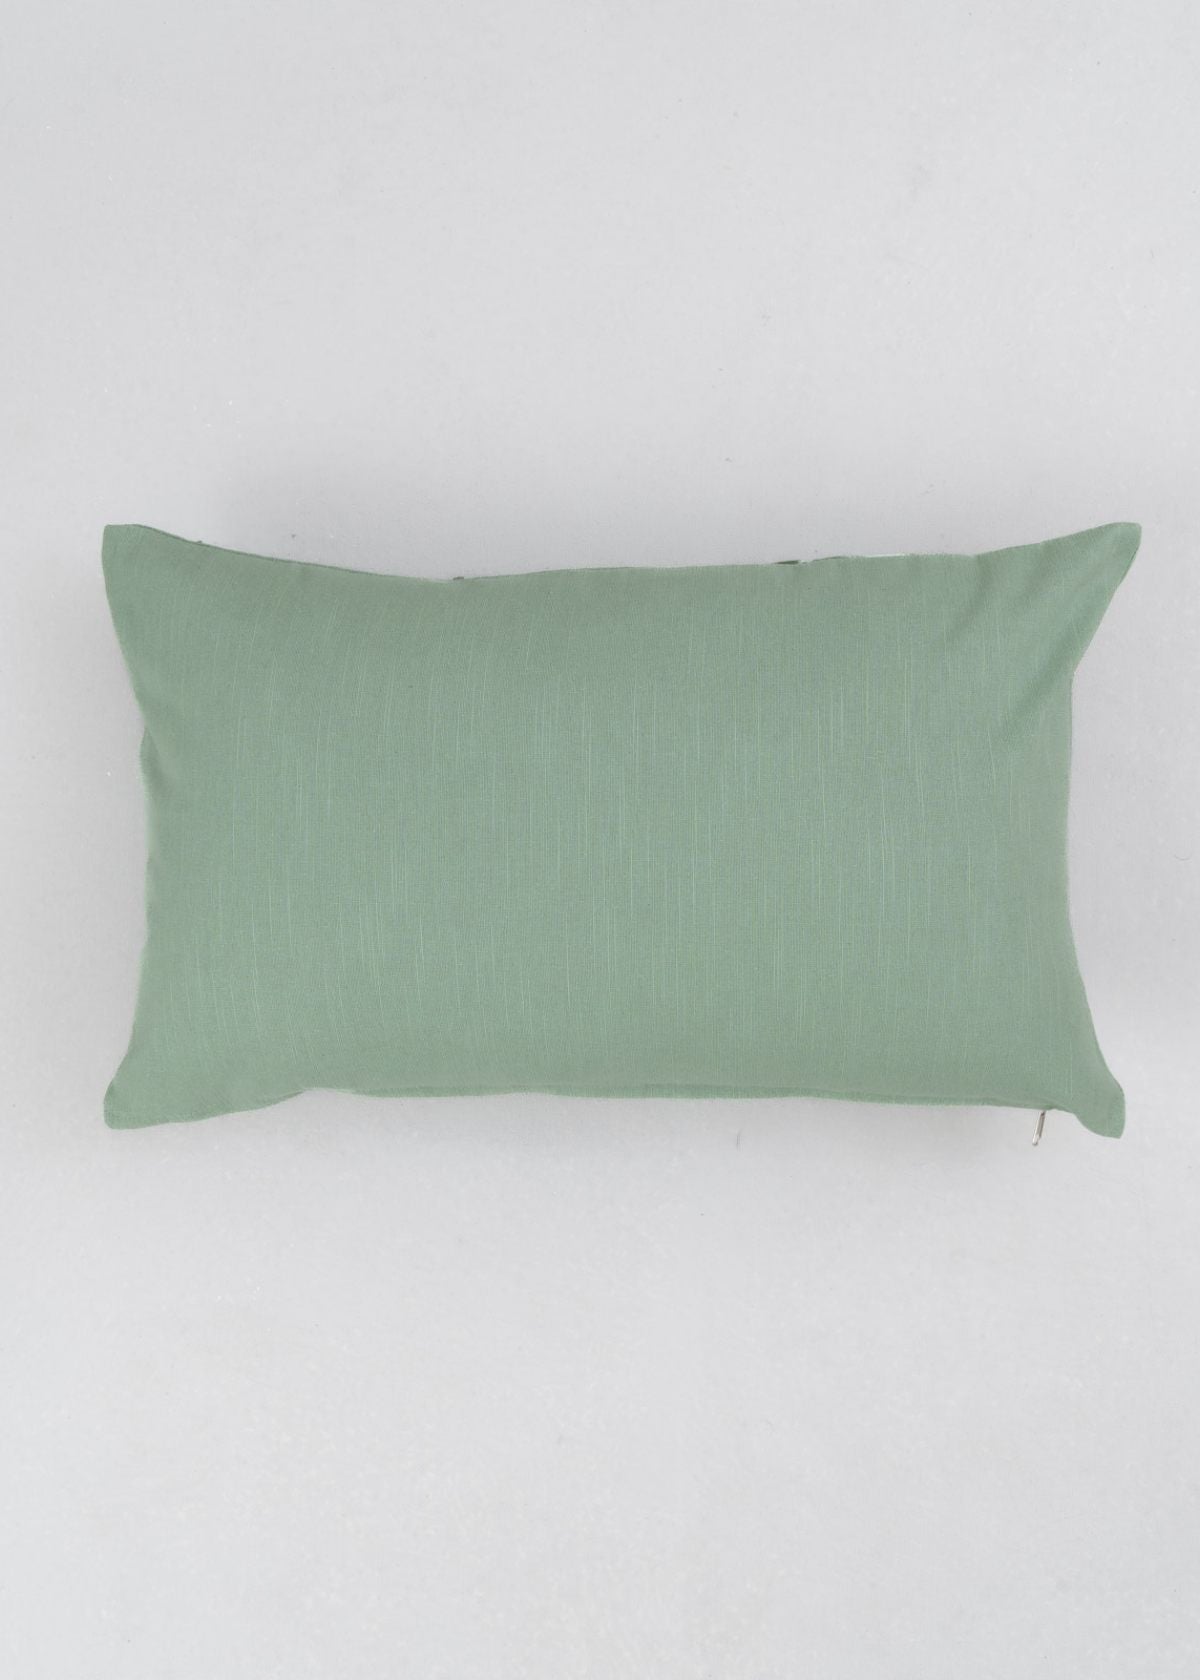 Leafy Affair Green Printed Cotton Cushion Cover - Green